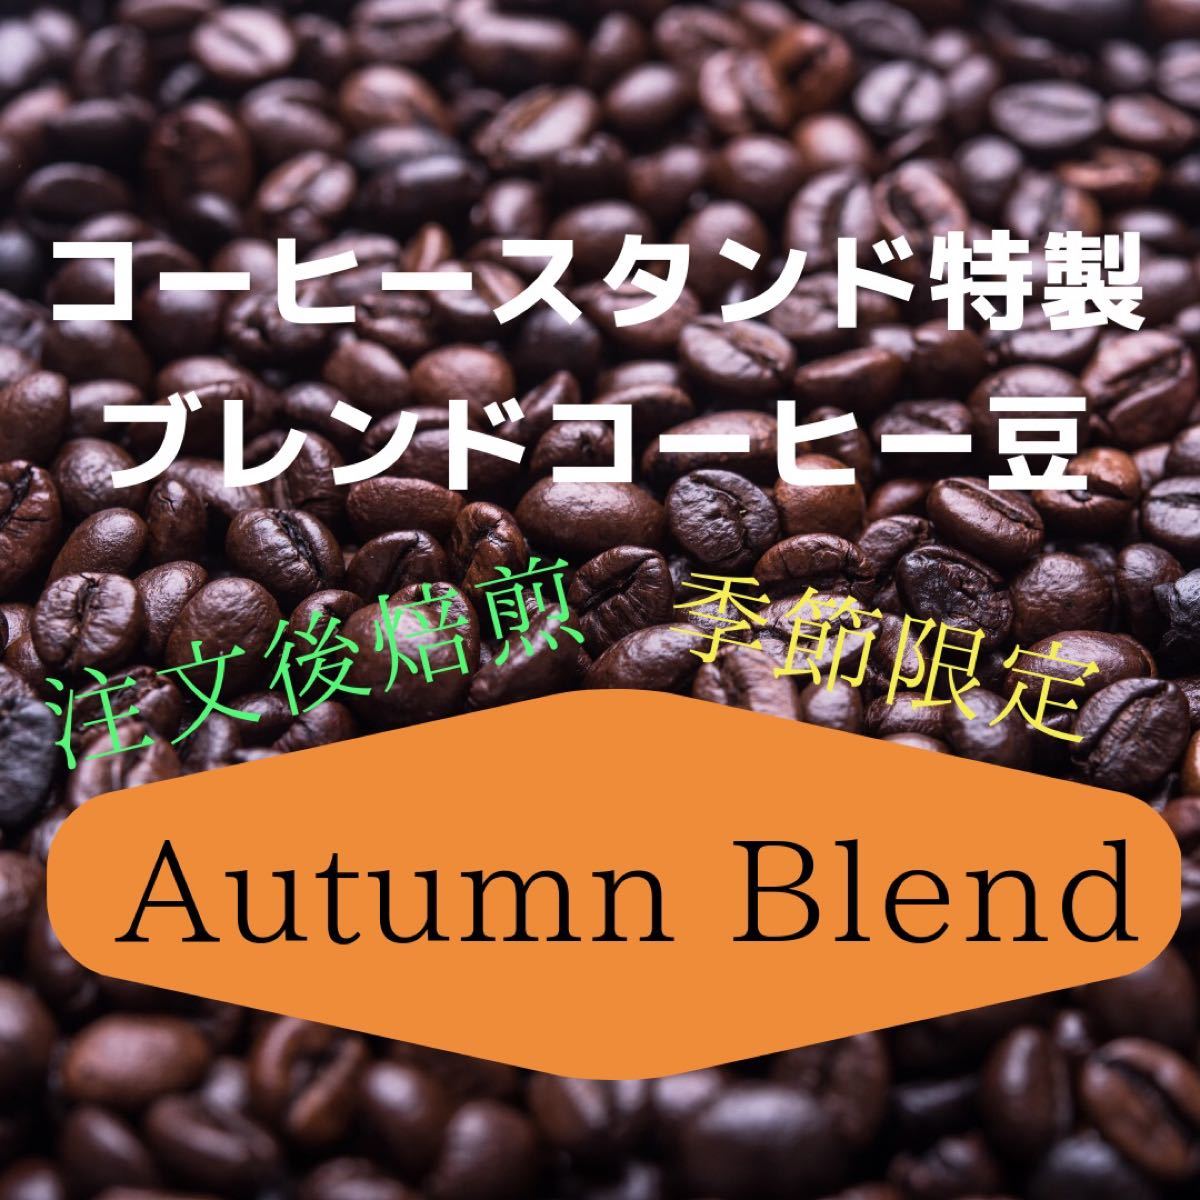 (注文後焙煎)秋限定ブレンドコーヒー豆300g+おすすめの豆20g ※即購入可